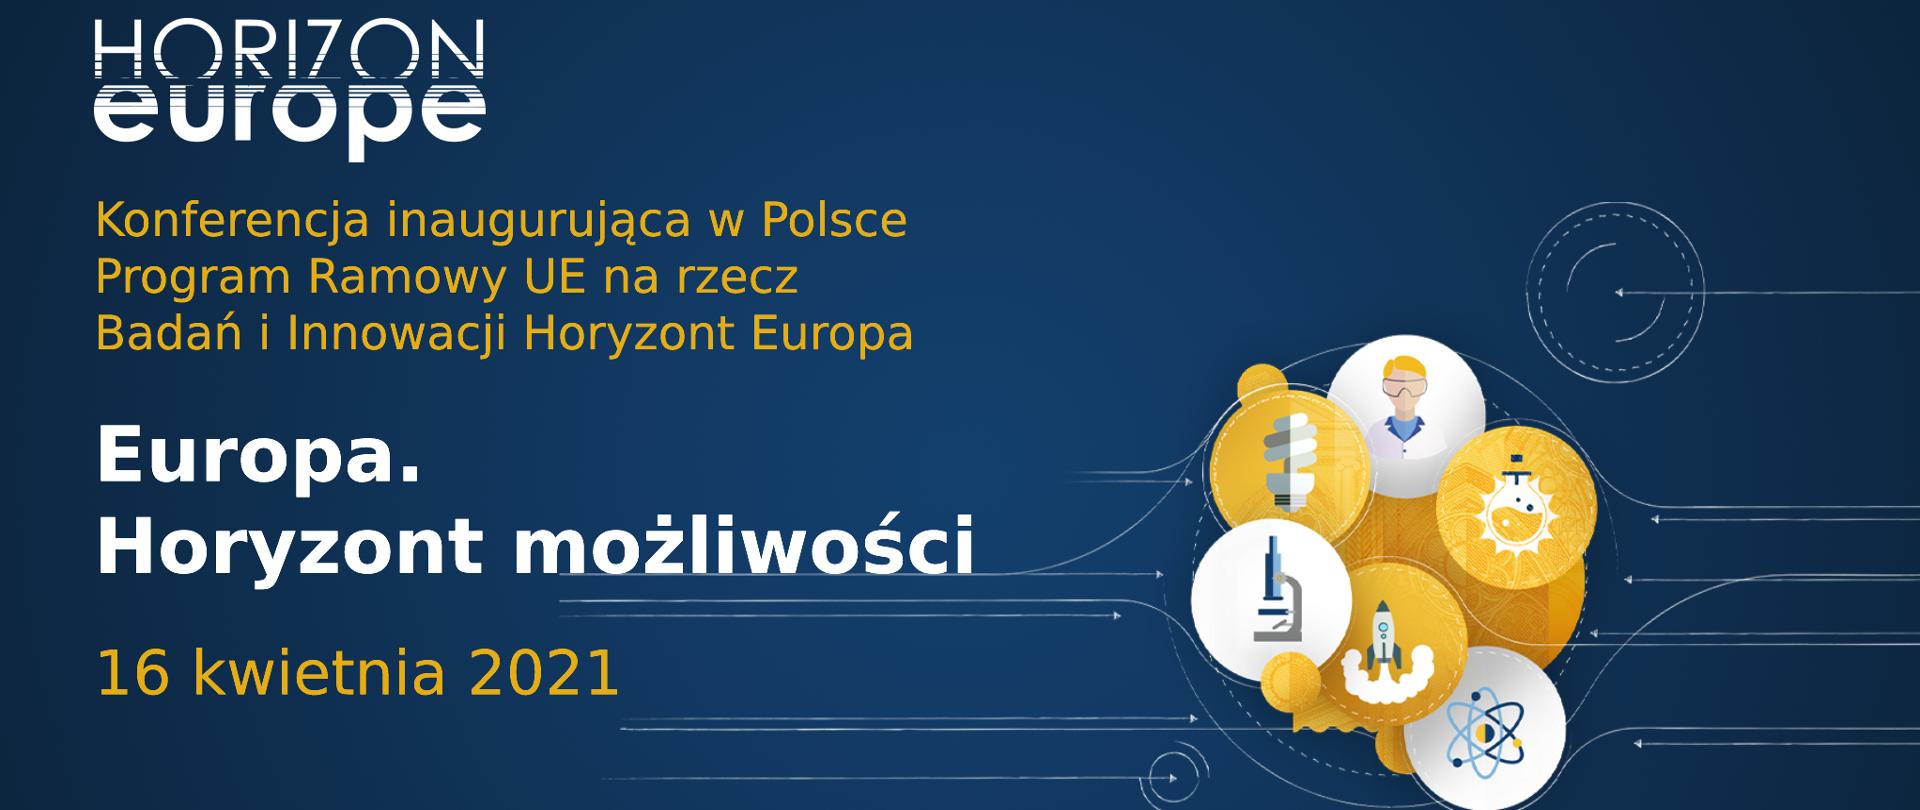 Na niebieskim tle biało złoty napis Konferencja inaugurująca w Polsce Program Ramowy UE na rzecz Badań i Innowacji Horyzont Europa
Europa.
Horyzont możliwości
16 kwietnia 2021